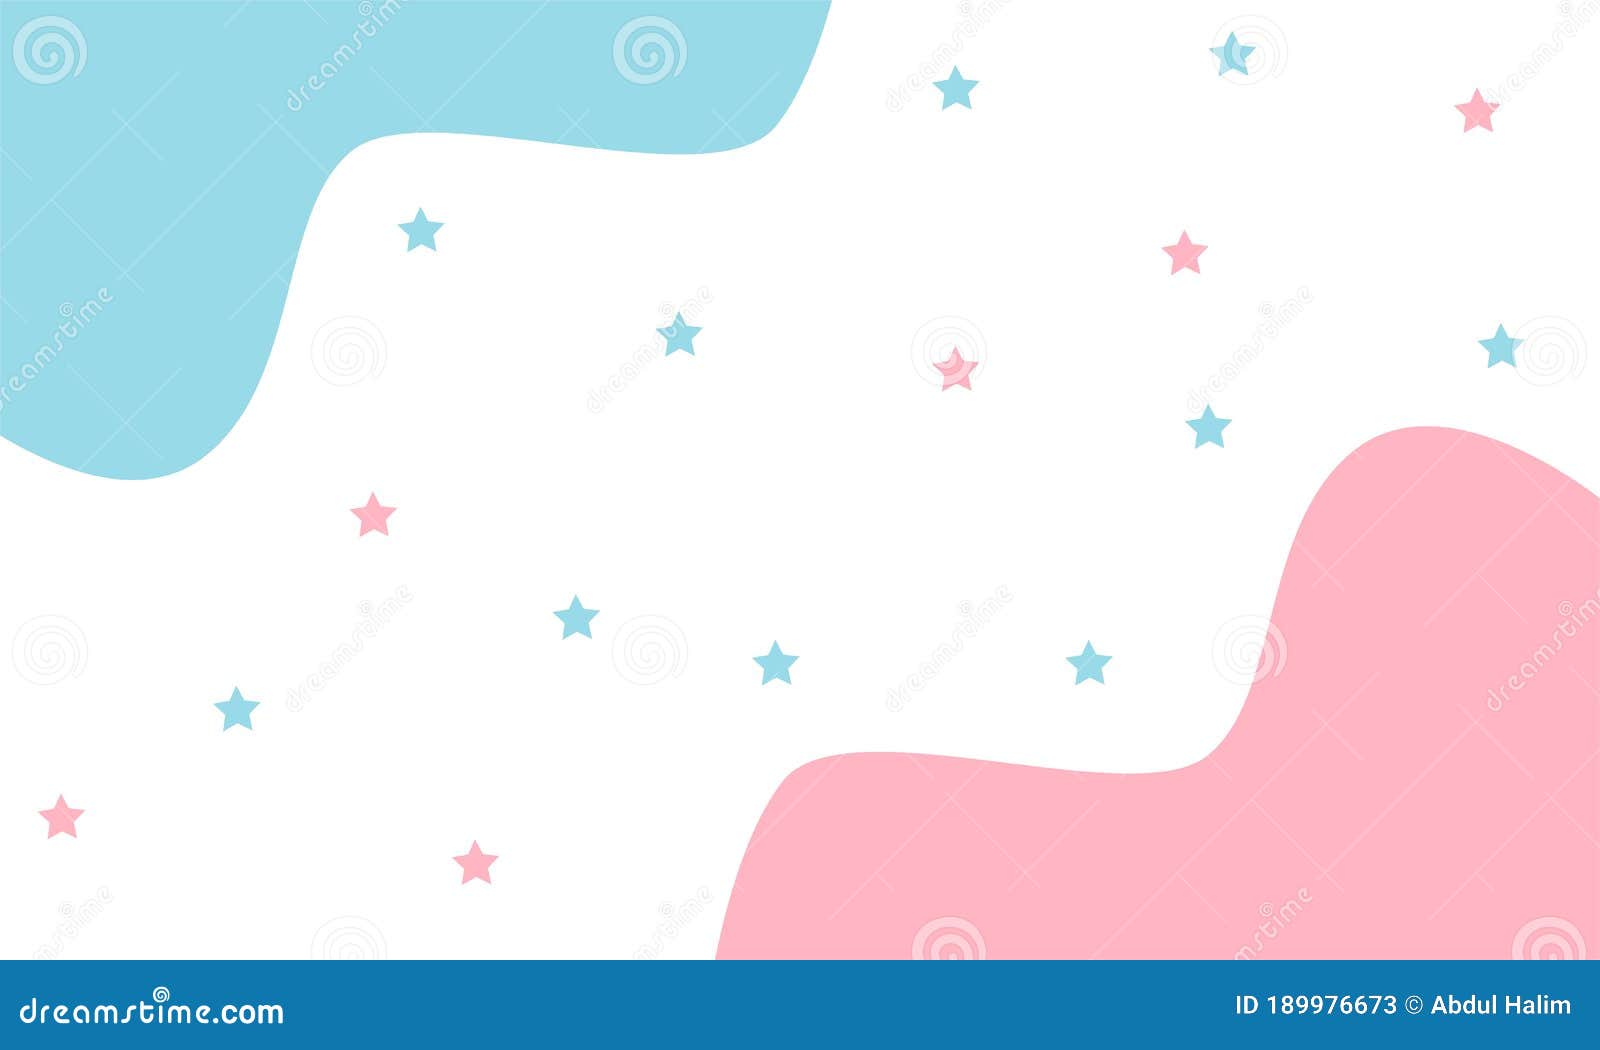 Hình nền đáng yêu cho mẫu banner bán hàng với sao màu hồng và xanh dương: Chào đón một mẫu hình nền đáng yêu với sao màu hồng và xanh dương tươi sáng, sẽ giúp banner bán hàng của bạn nổi bật hơn trong đám đông. Hãy cùng xem và tạo ra những sản phẩm độc đáo hơn nhé.